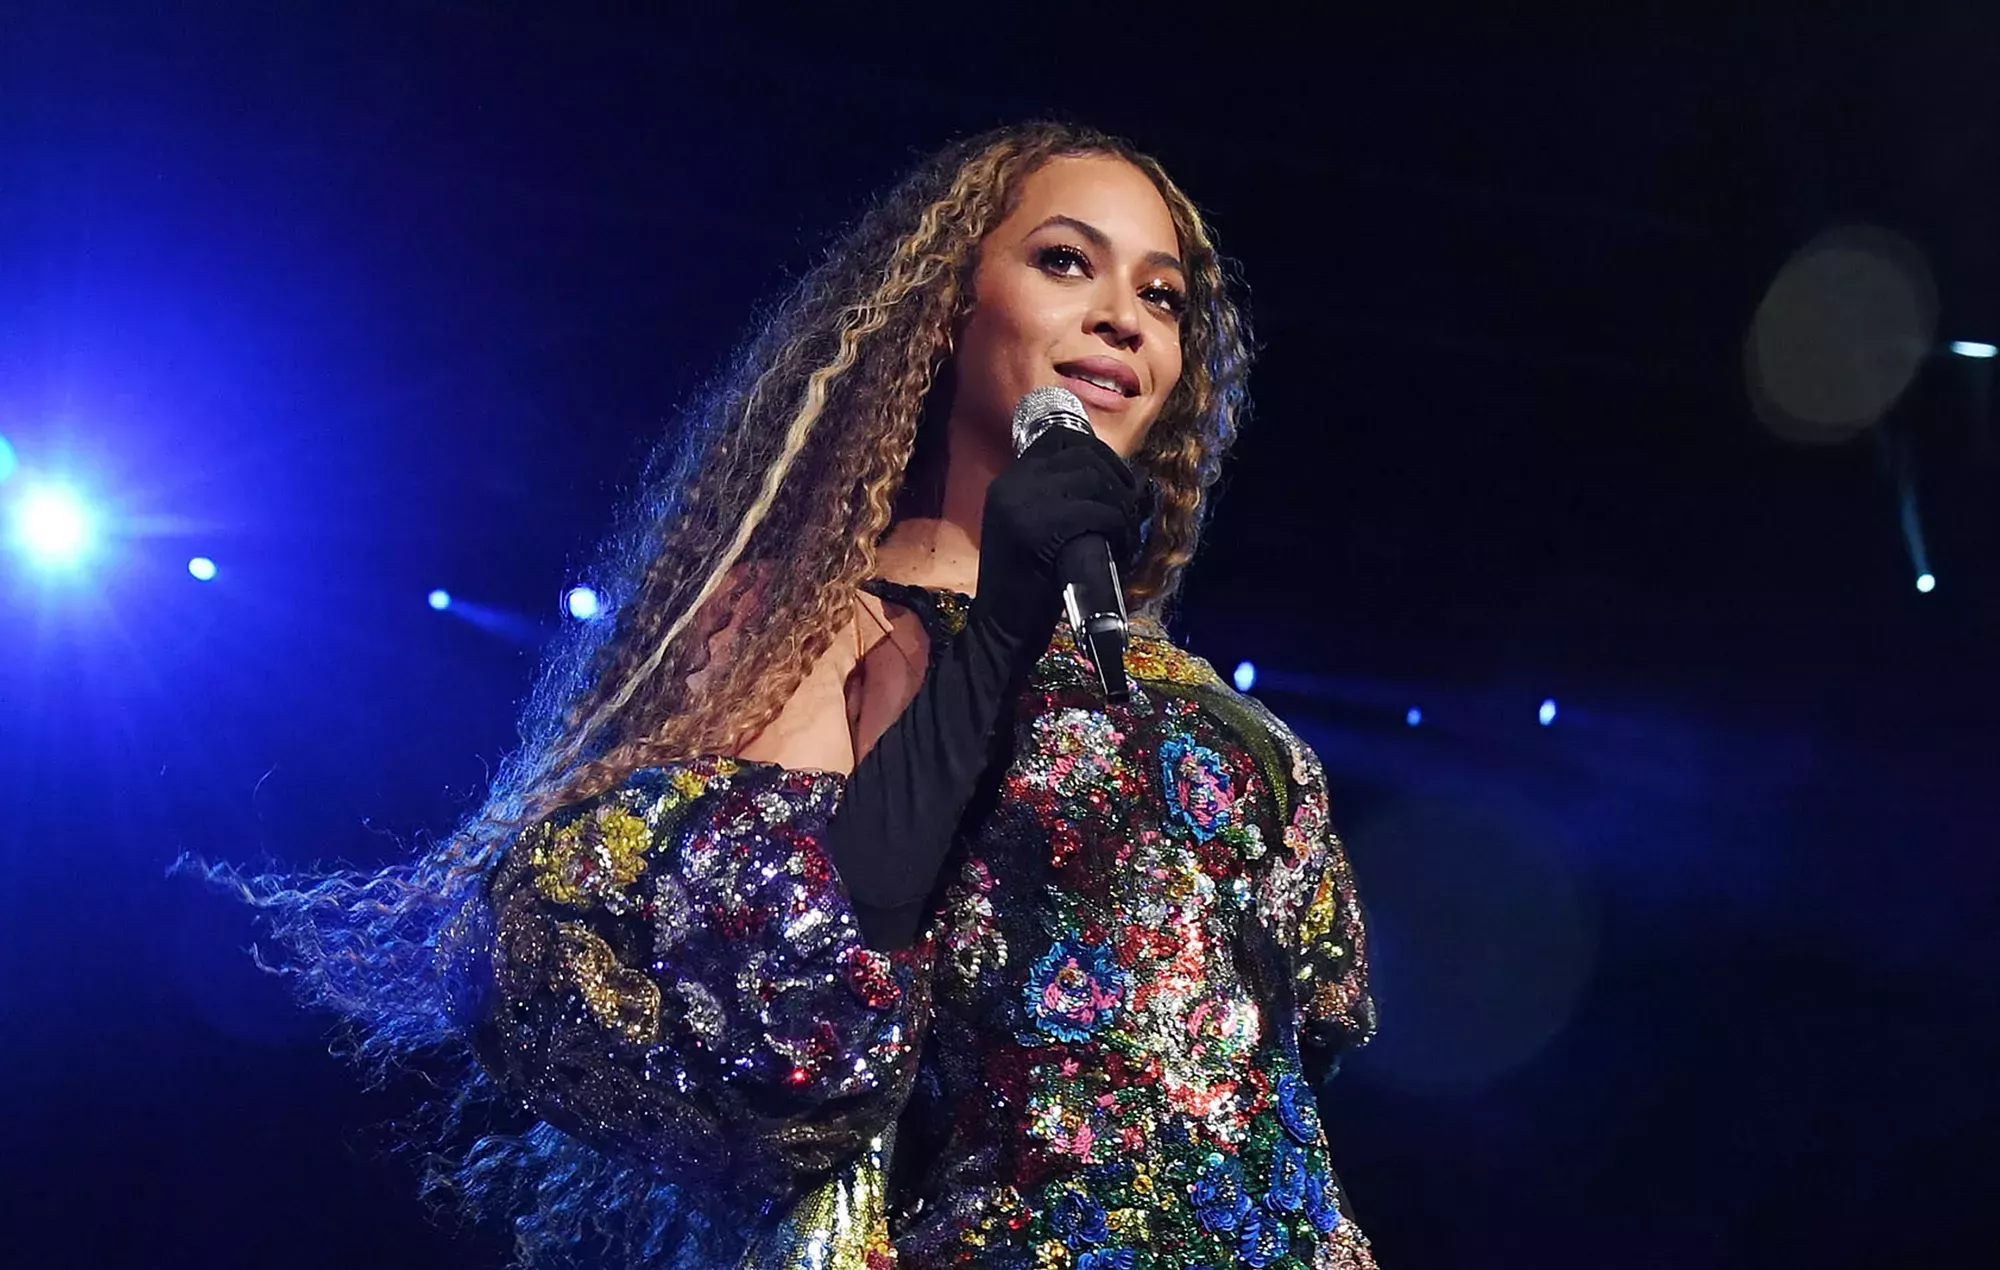 La gira 'Renaissance' de Beyoncé podría recaudar 500 millones de dólares más que la gira 'Eras' de Taylor Swift